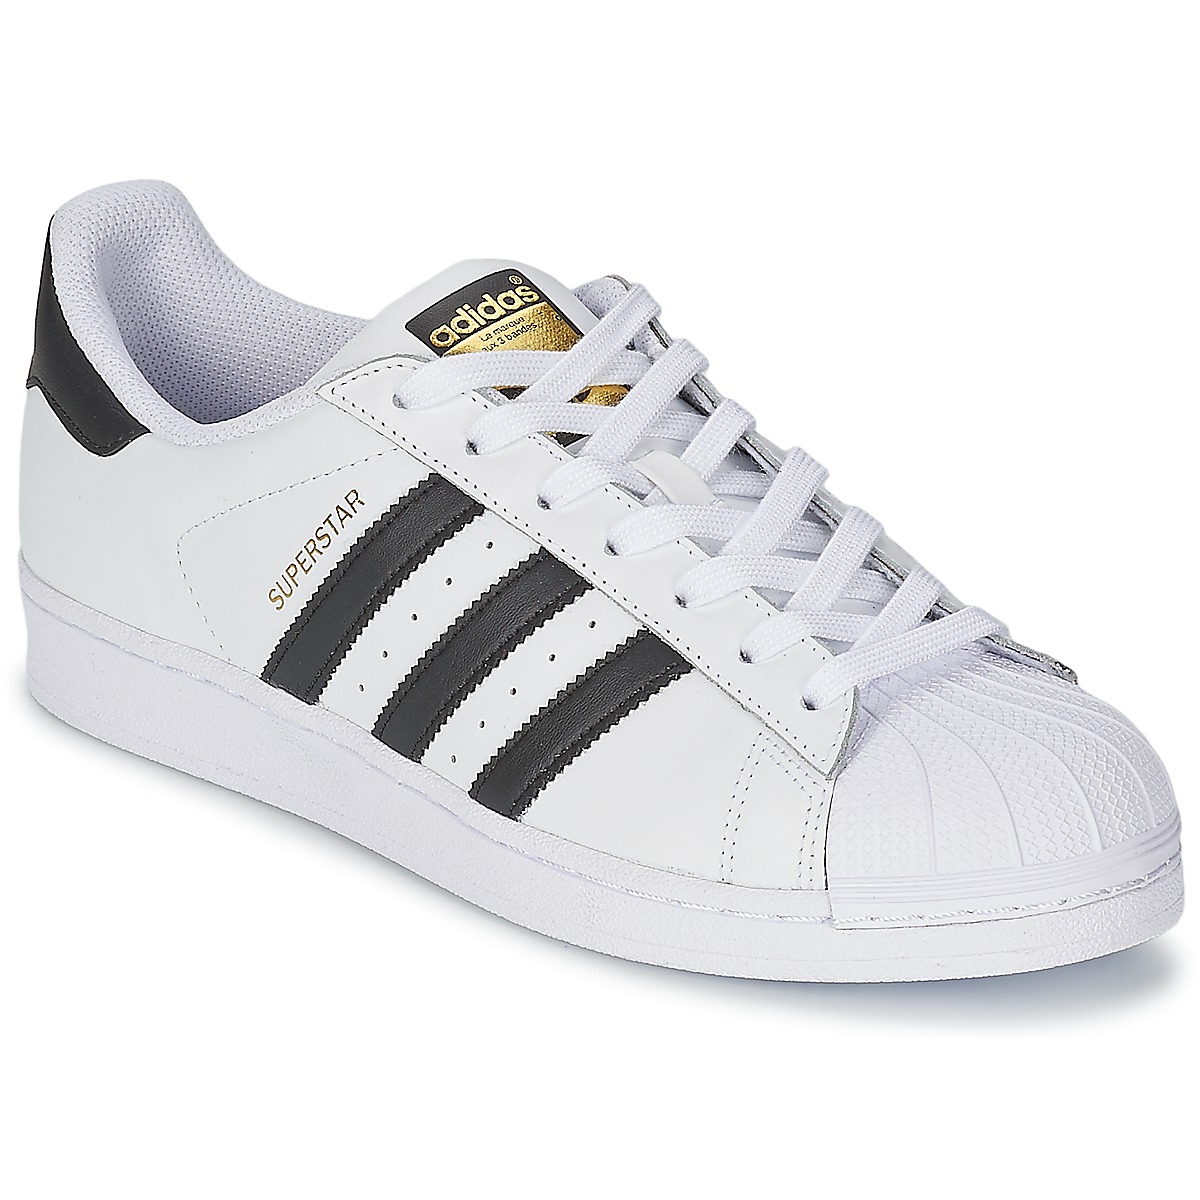 Adidas Superstar Originals C77124 Wit / Zwart (mt 36 t/m 49)-36 2/3